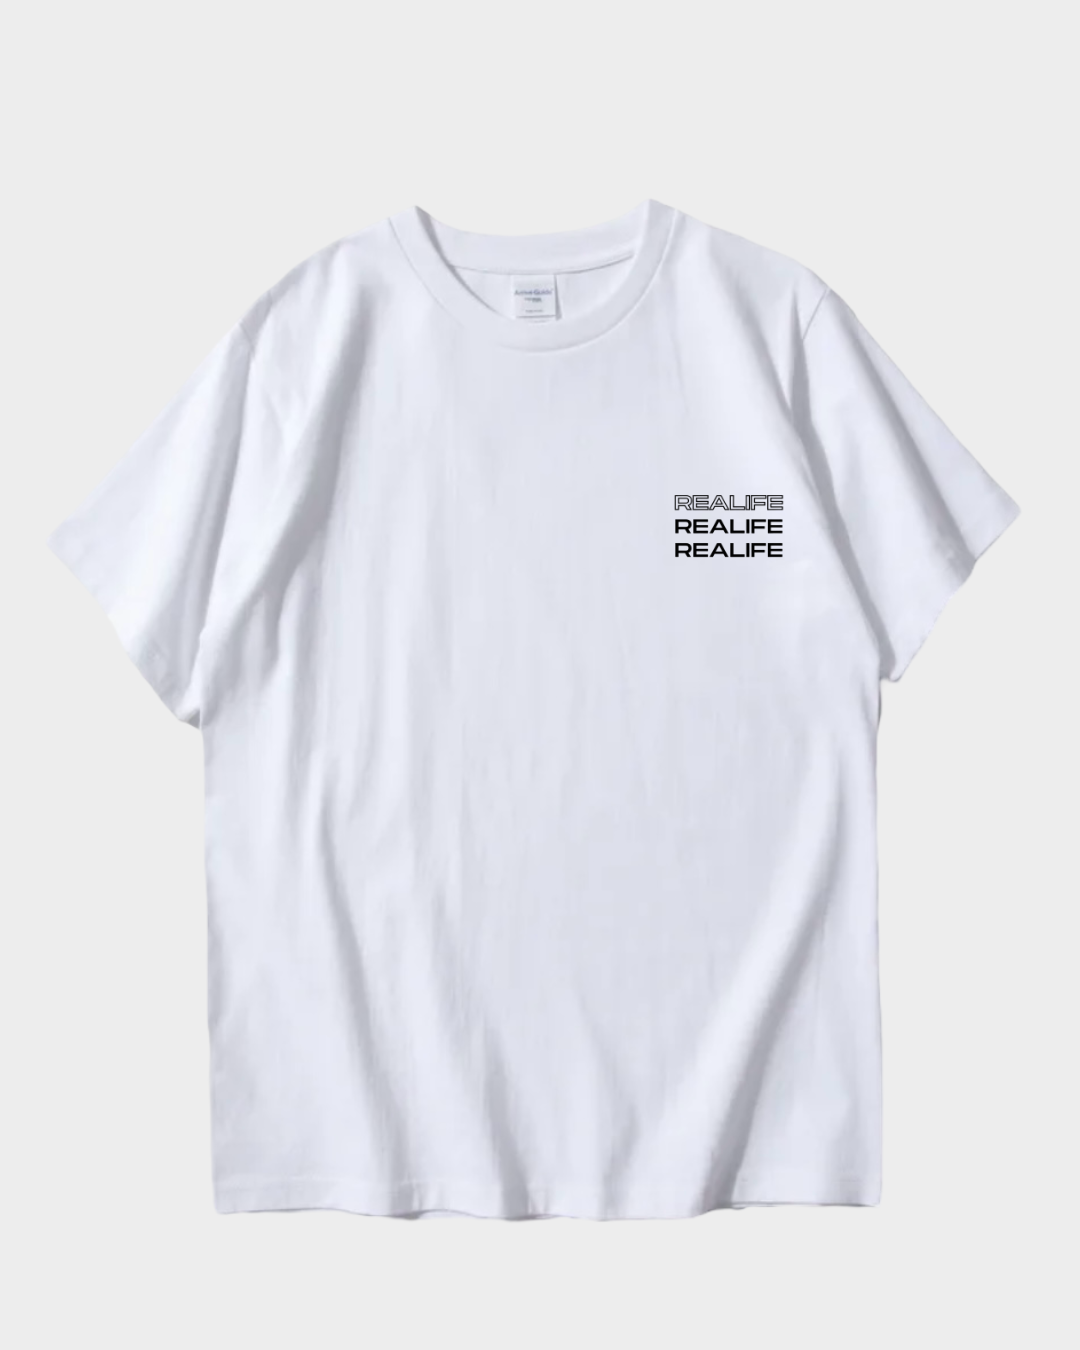 Realife T-shirt, white